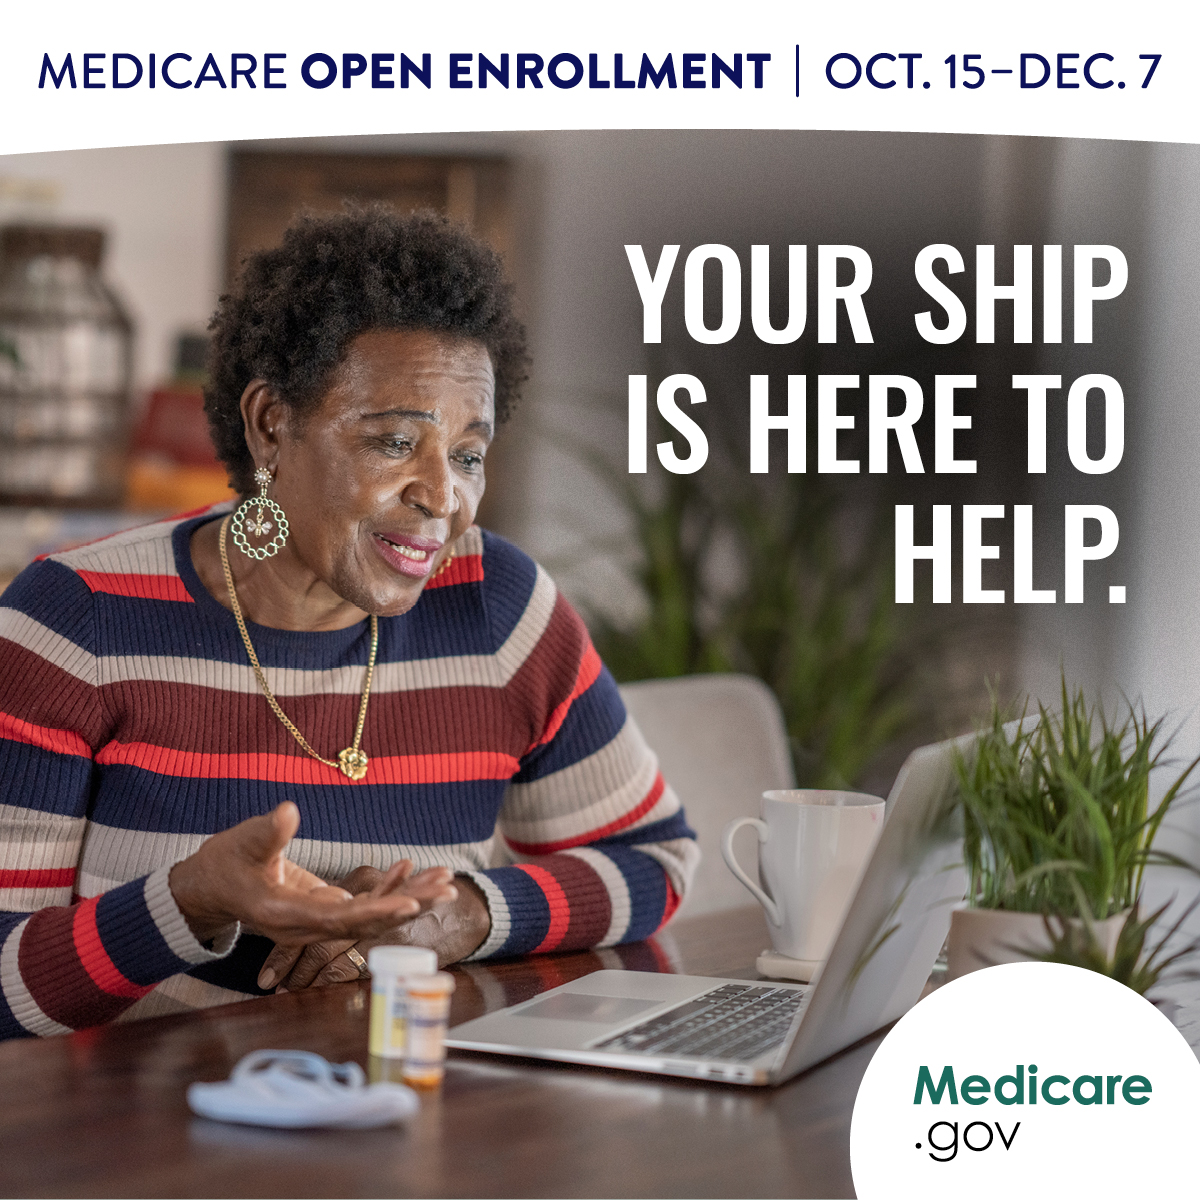 Medicare Open Enrollment begins Oct. 15